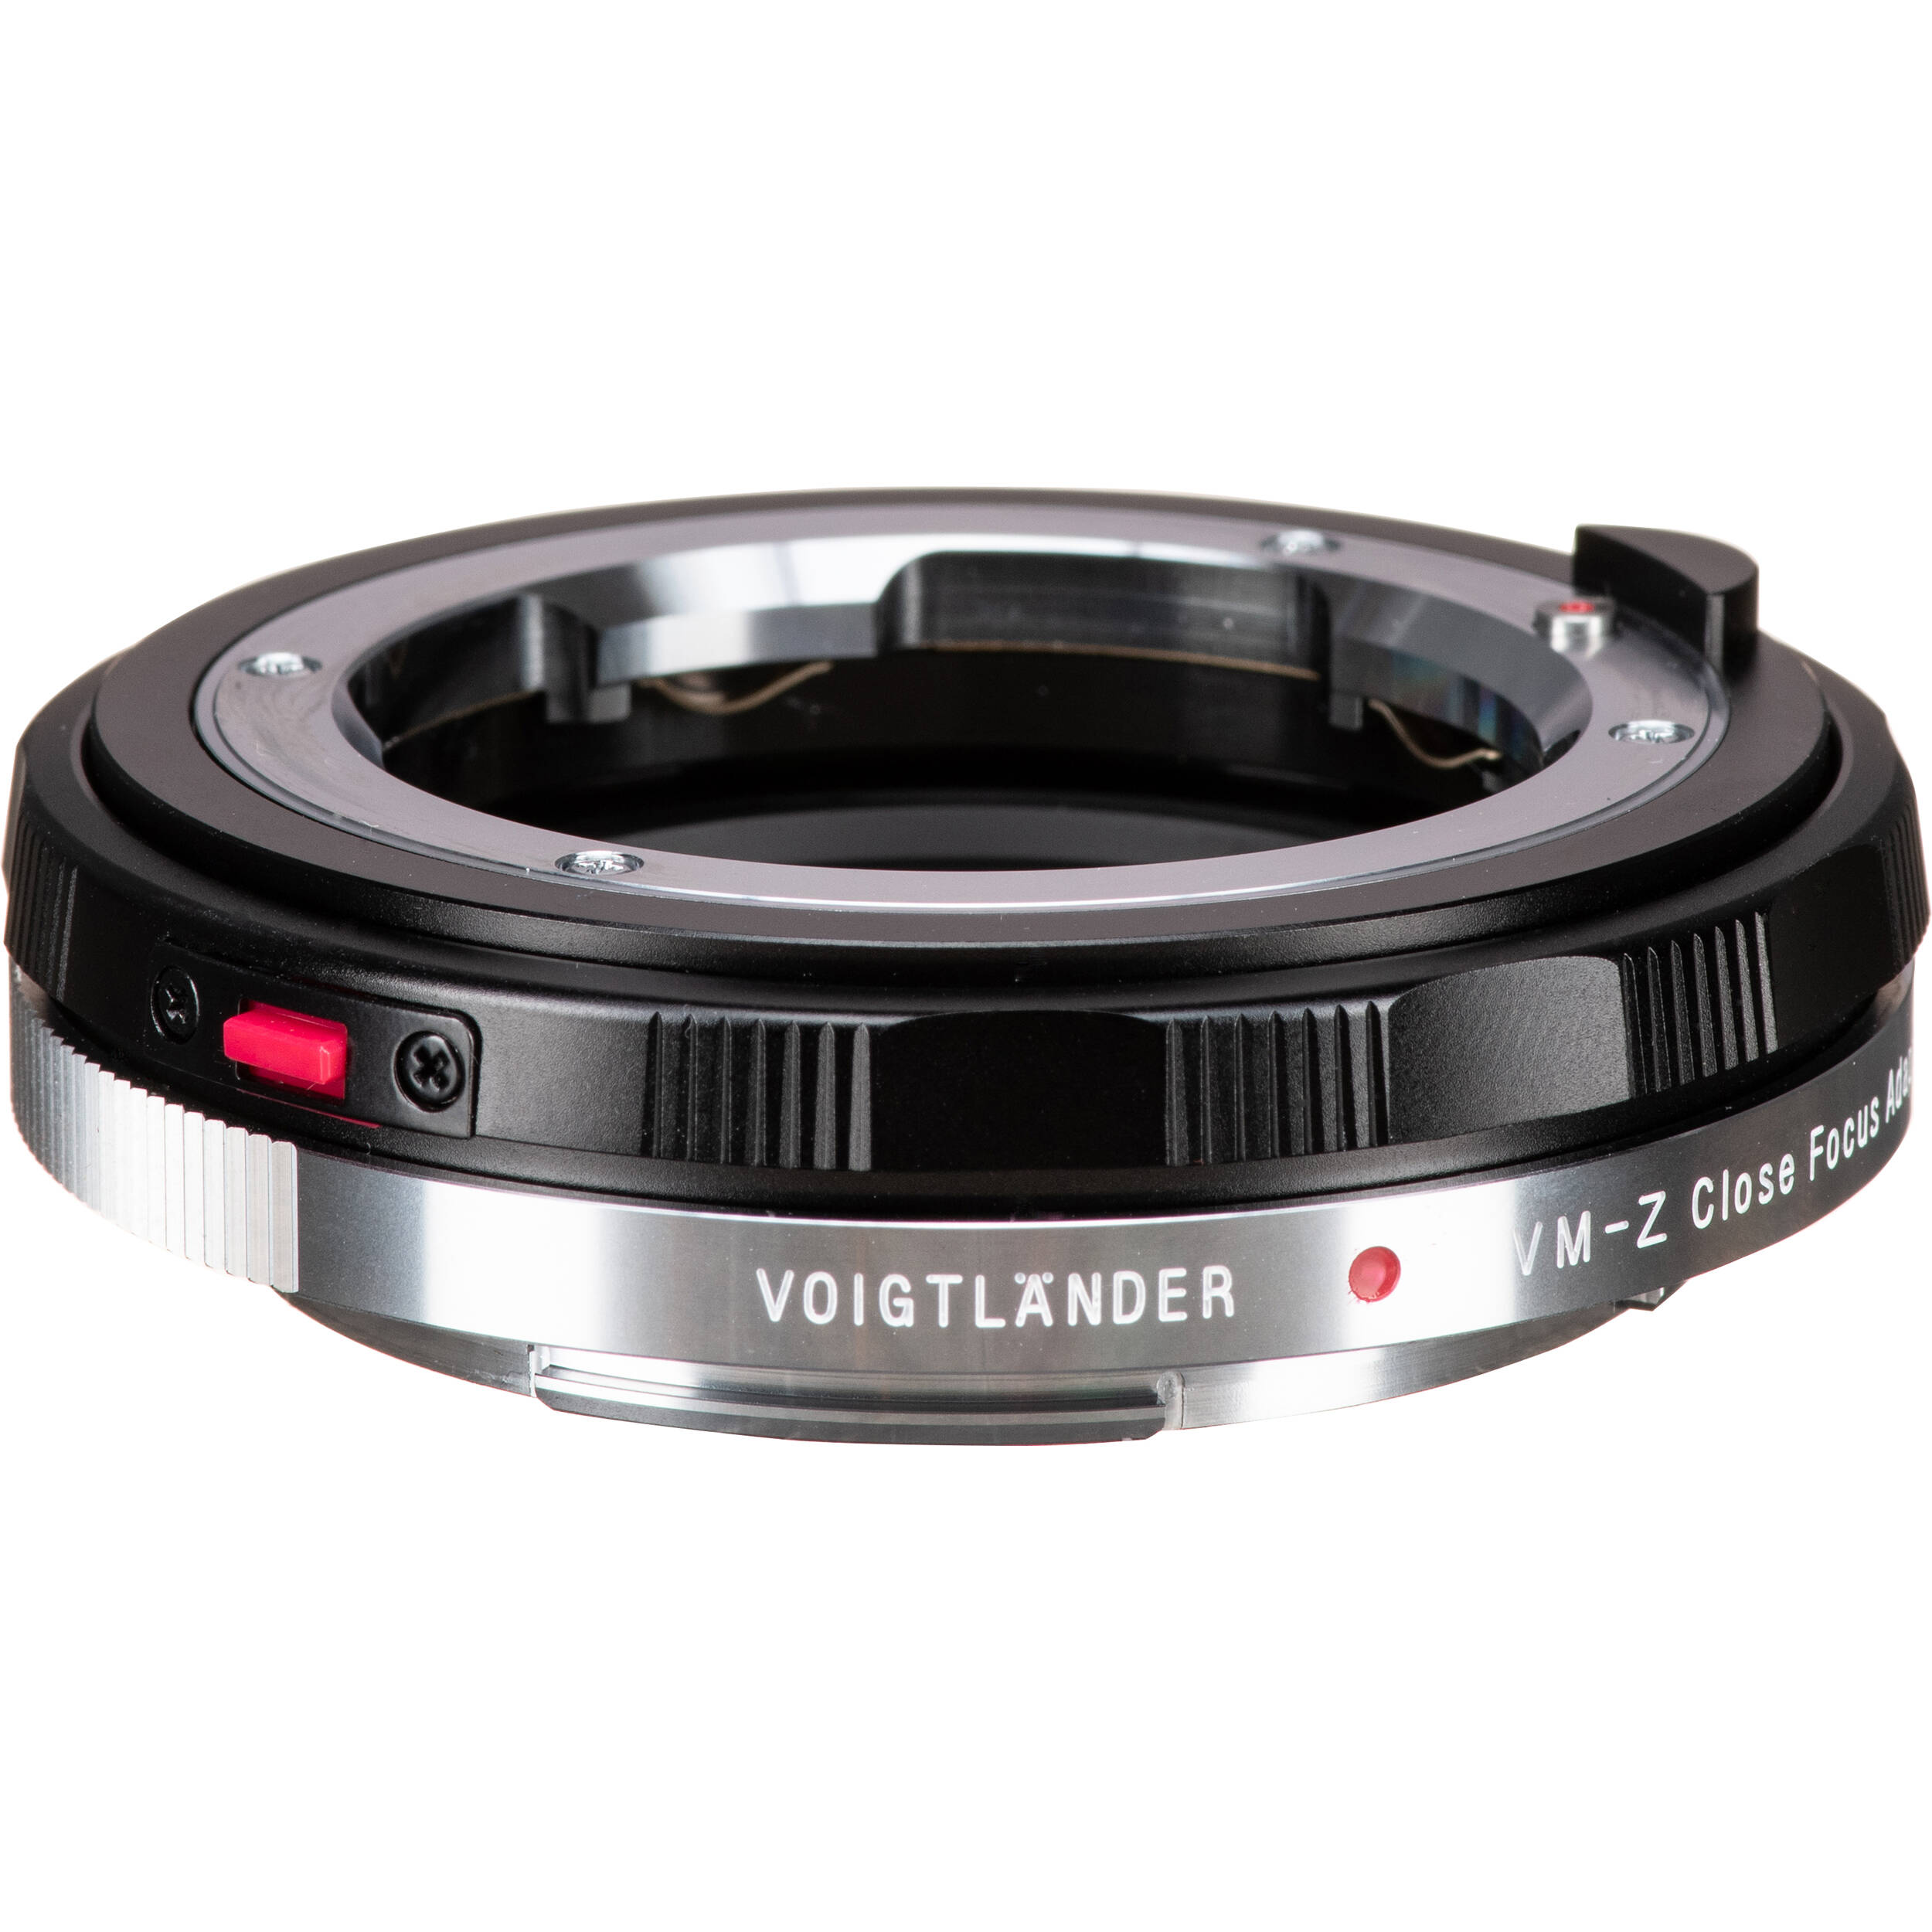 Voigtlander Vm Z Close Focus Adapter 285a B H Photo Video